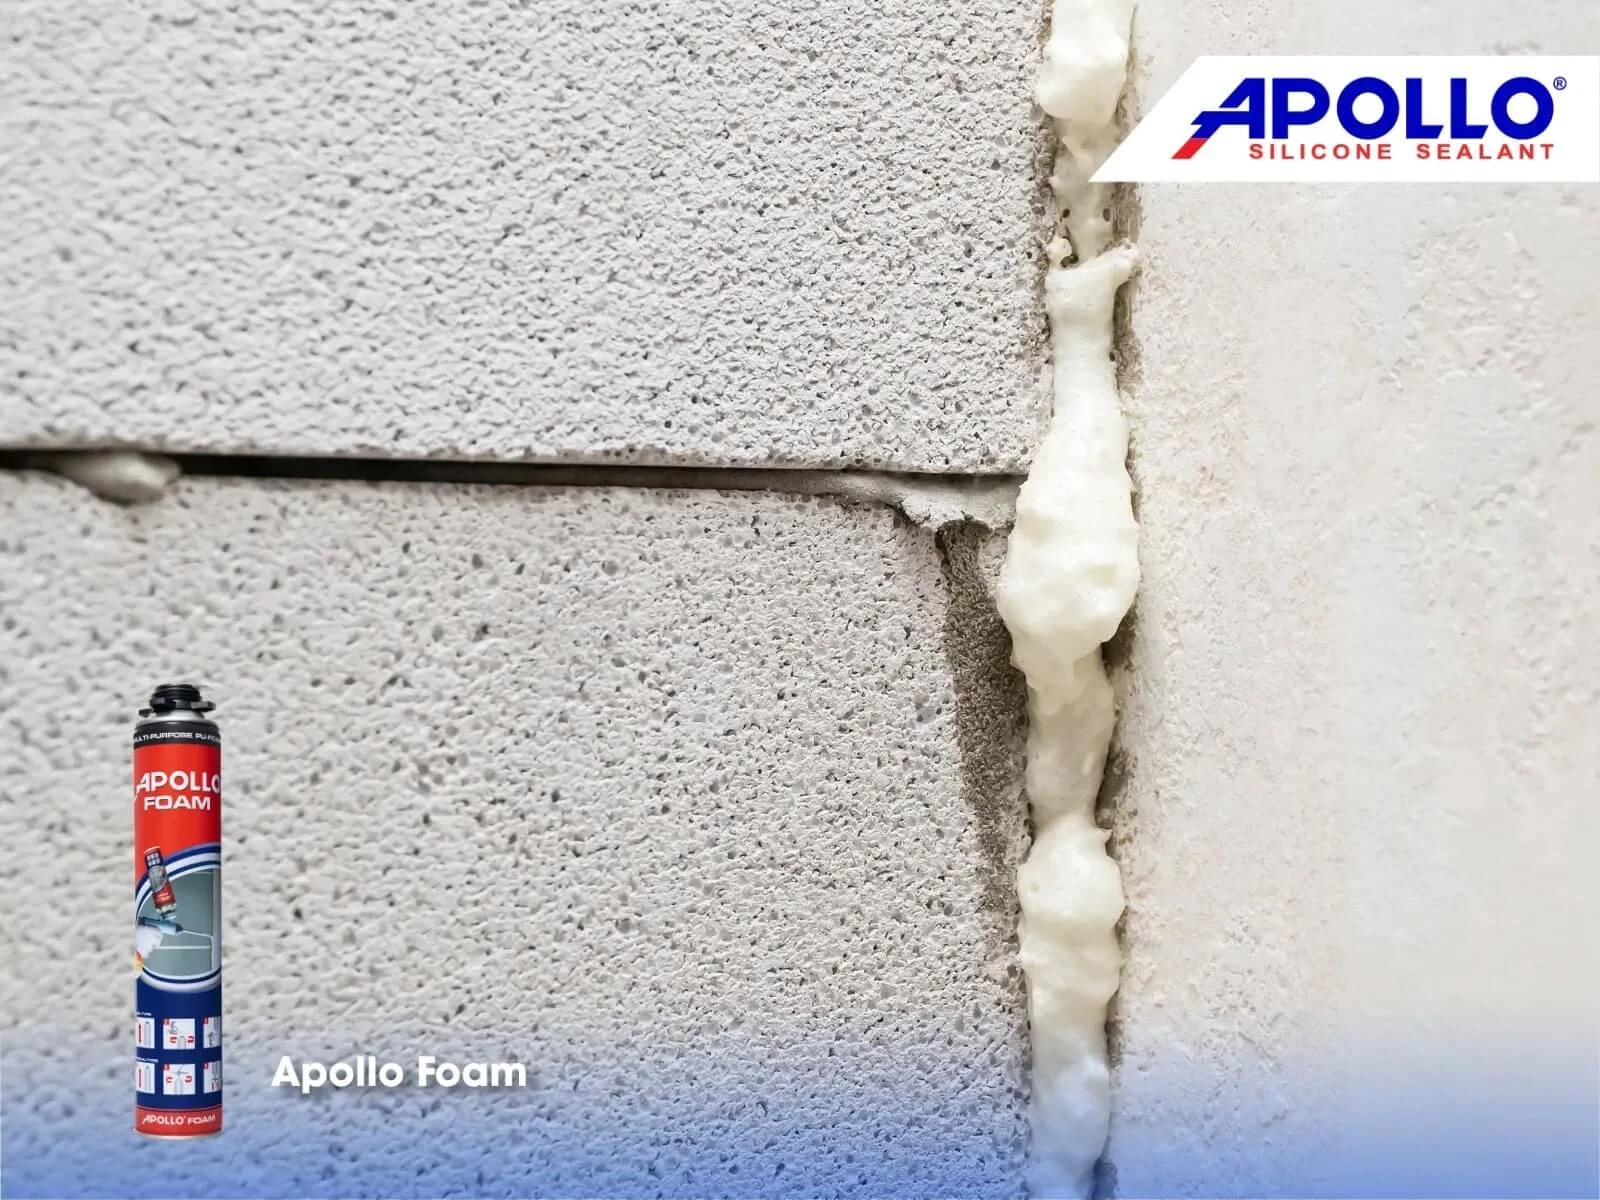 Keo bọt nở Apollo PU Foam có nhiều tính chất vượt trội đem lại khả năng trám trét hiệu quả